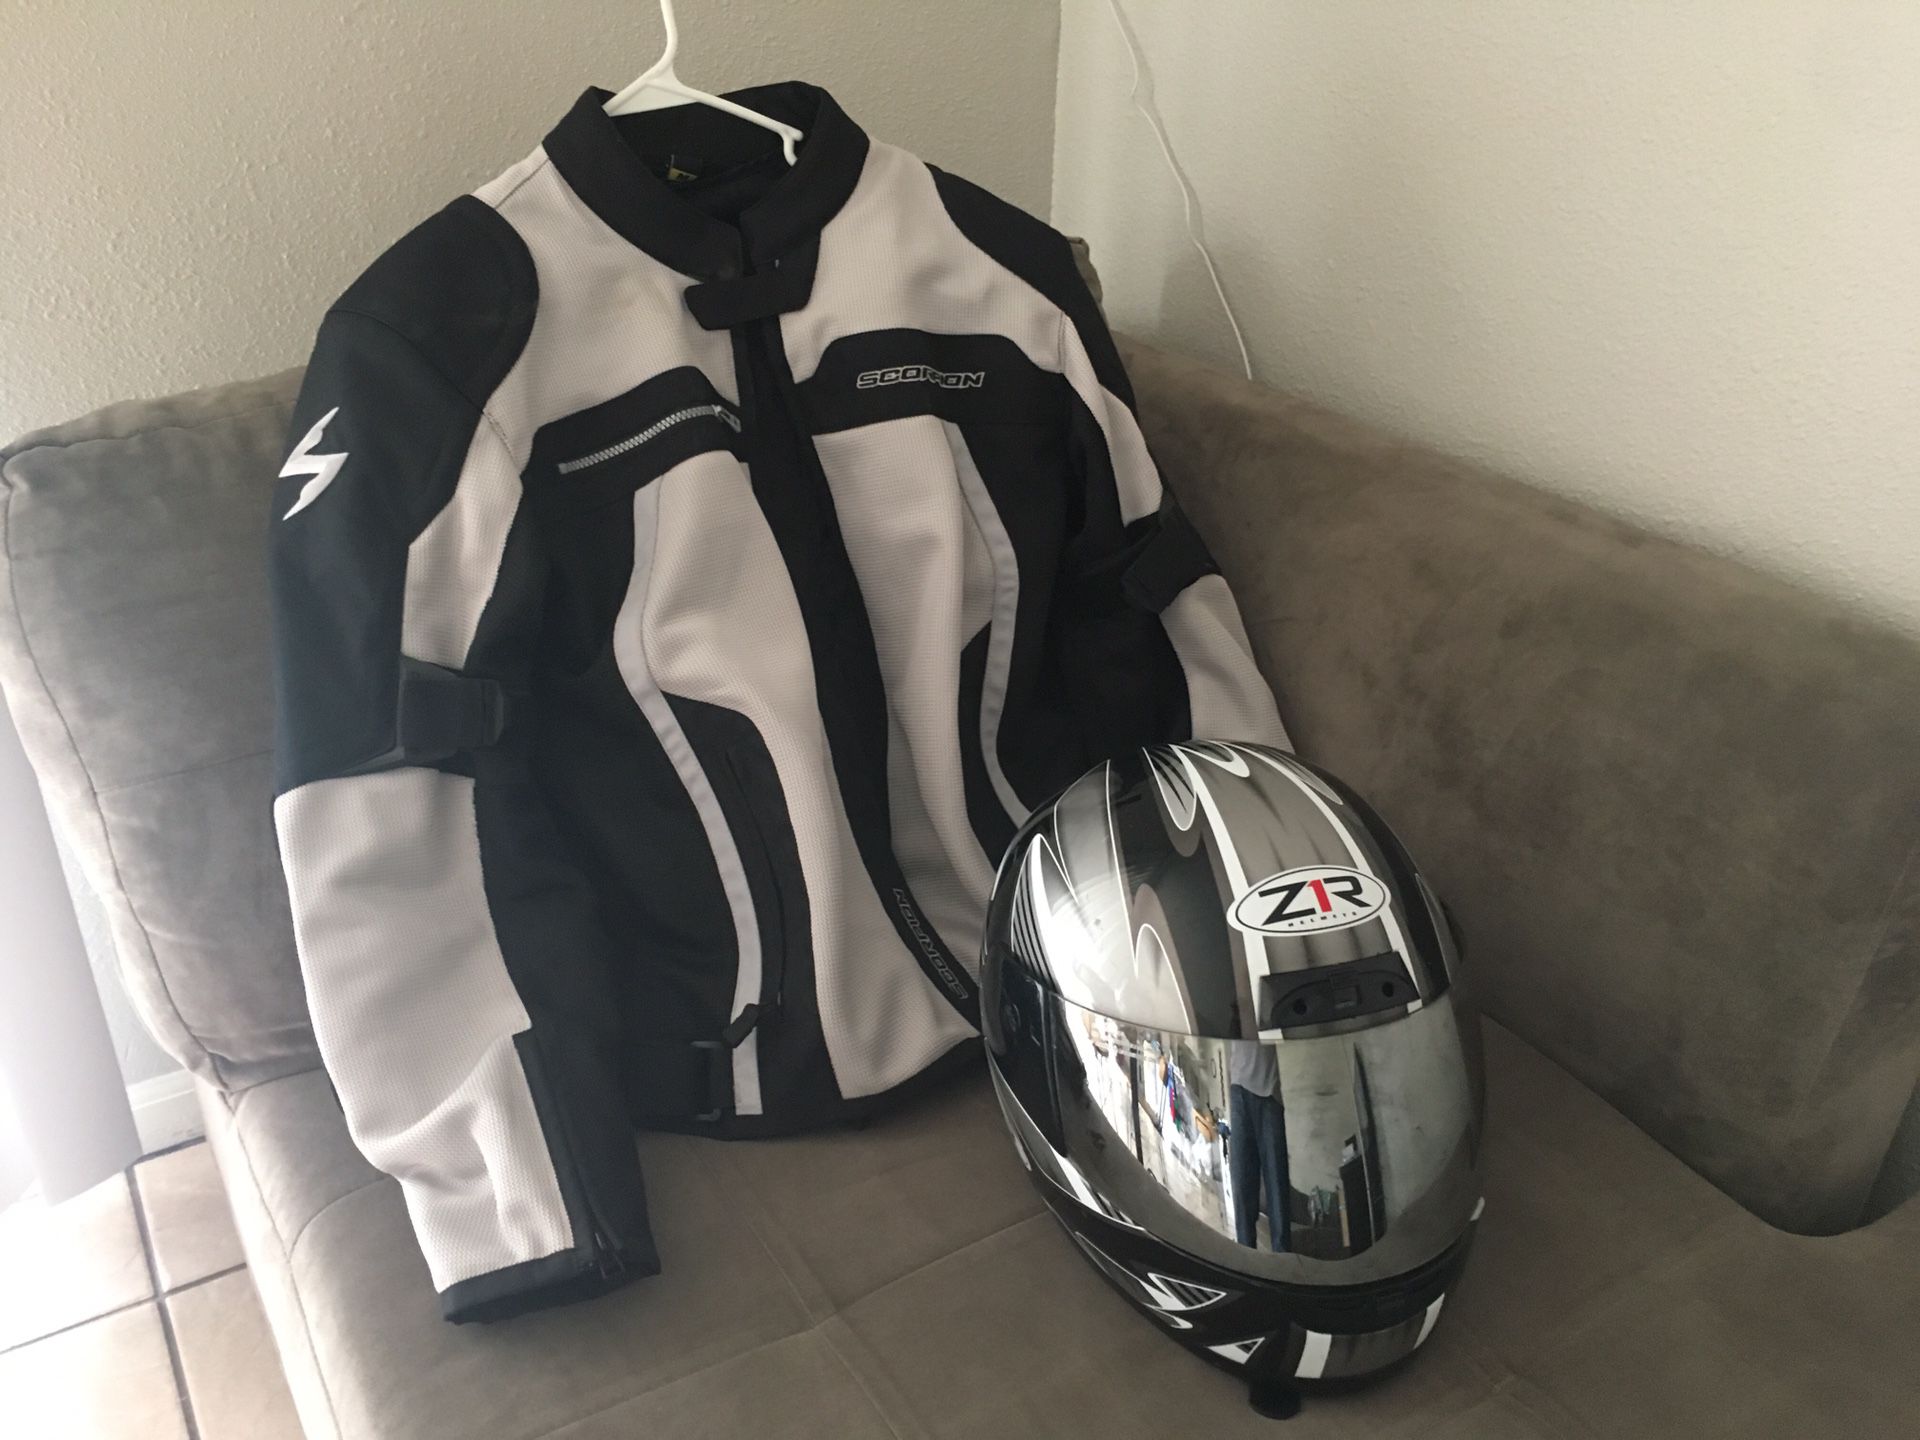 Scorpion motorcycle jacket and helmet